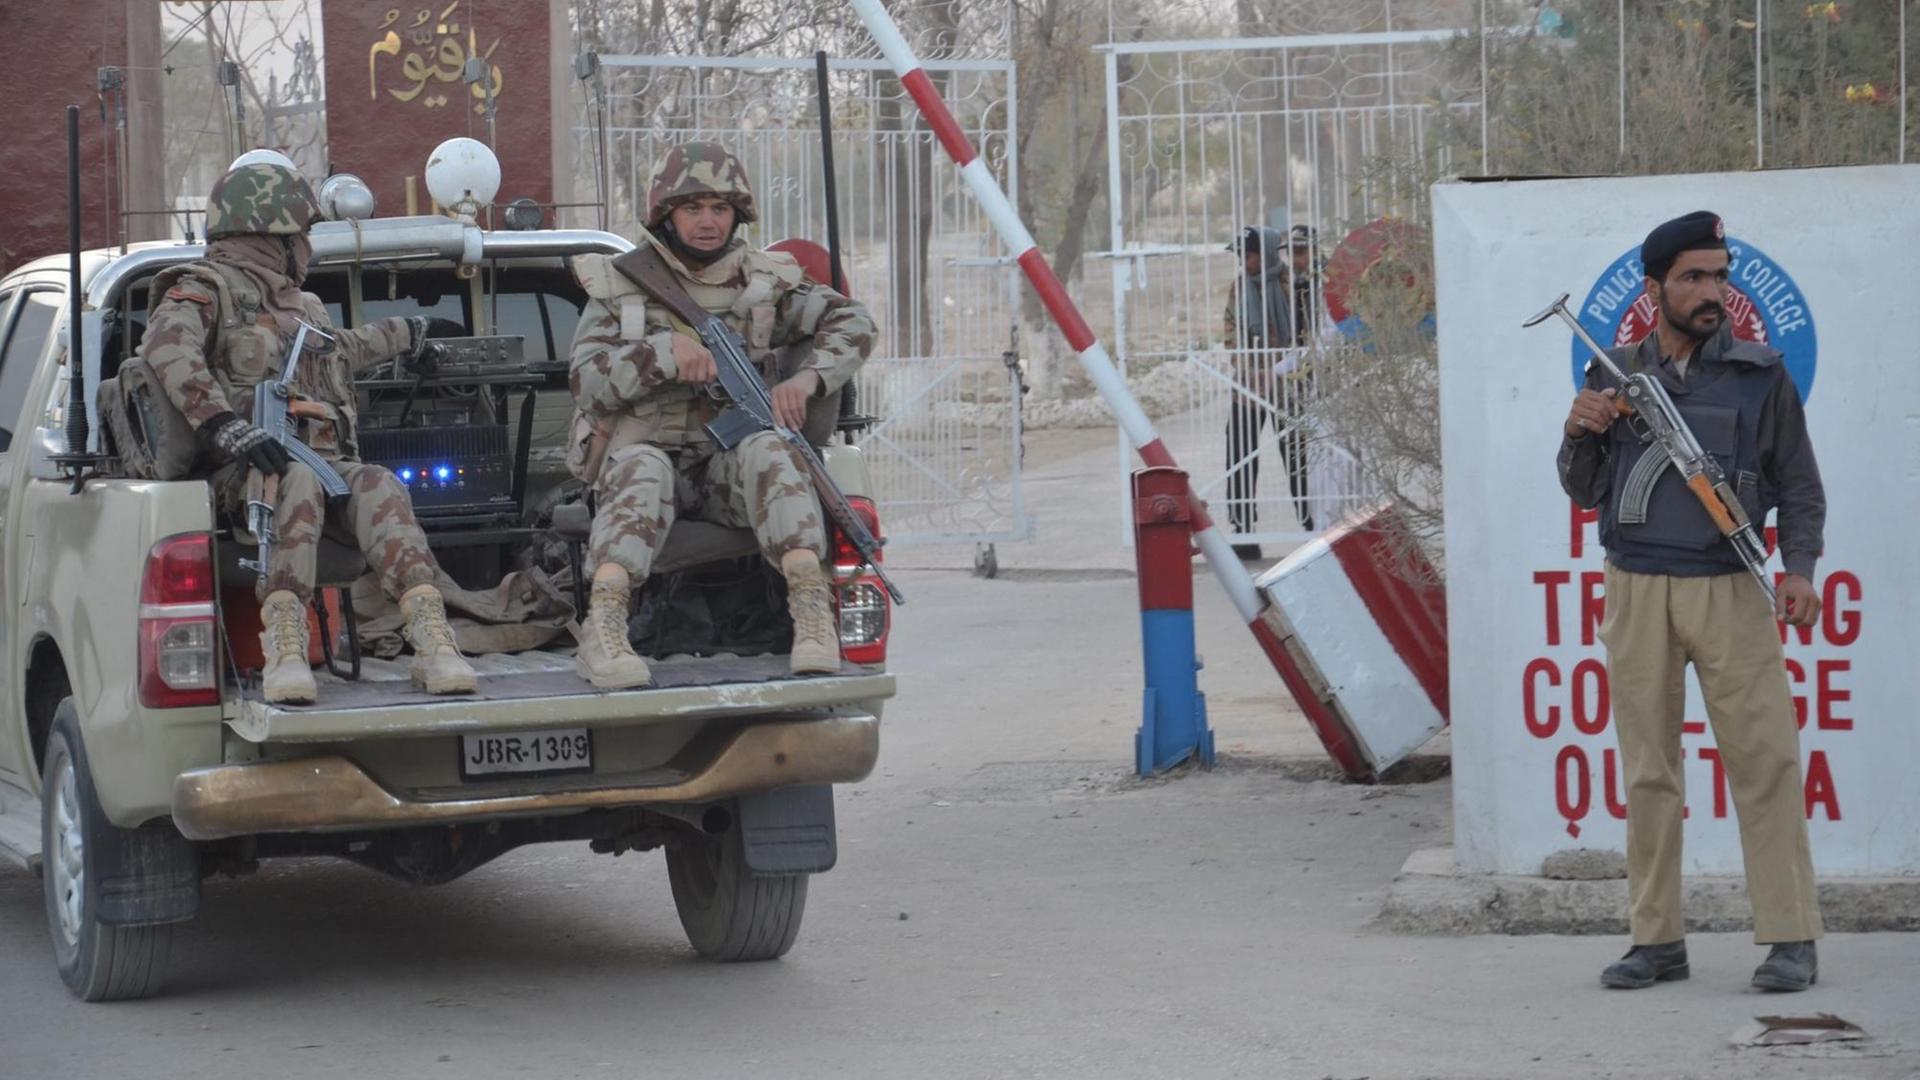 Sicherheitskräfte bewachen die Polizeischule in Quetta in der Provinz Balutschistan, nachdem sie von Extremisten attackiert wurde. Bei dem Anschlag starben 60 Menschen.